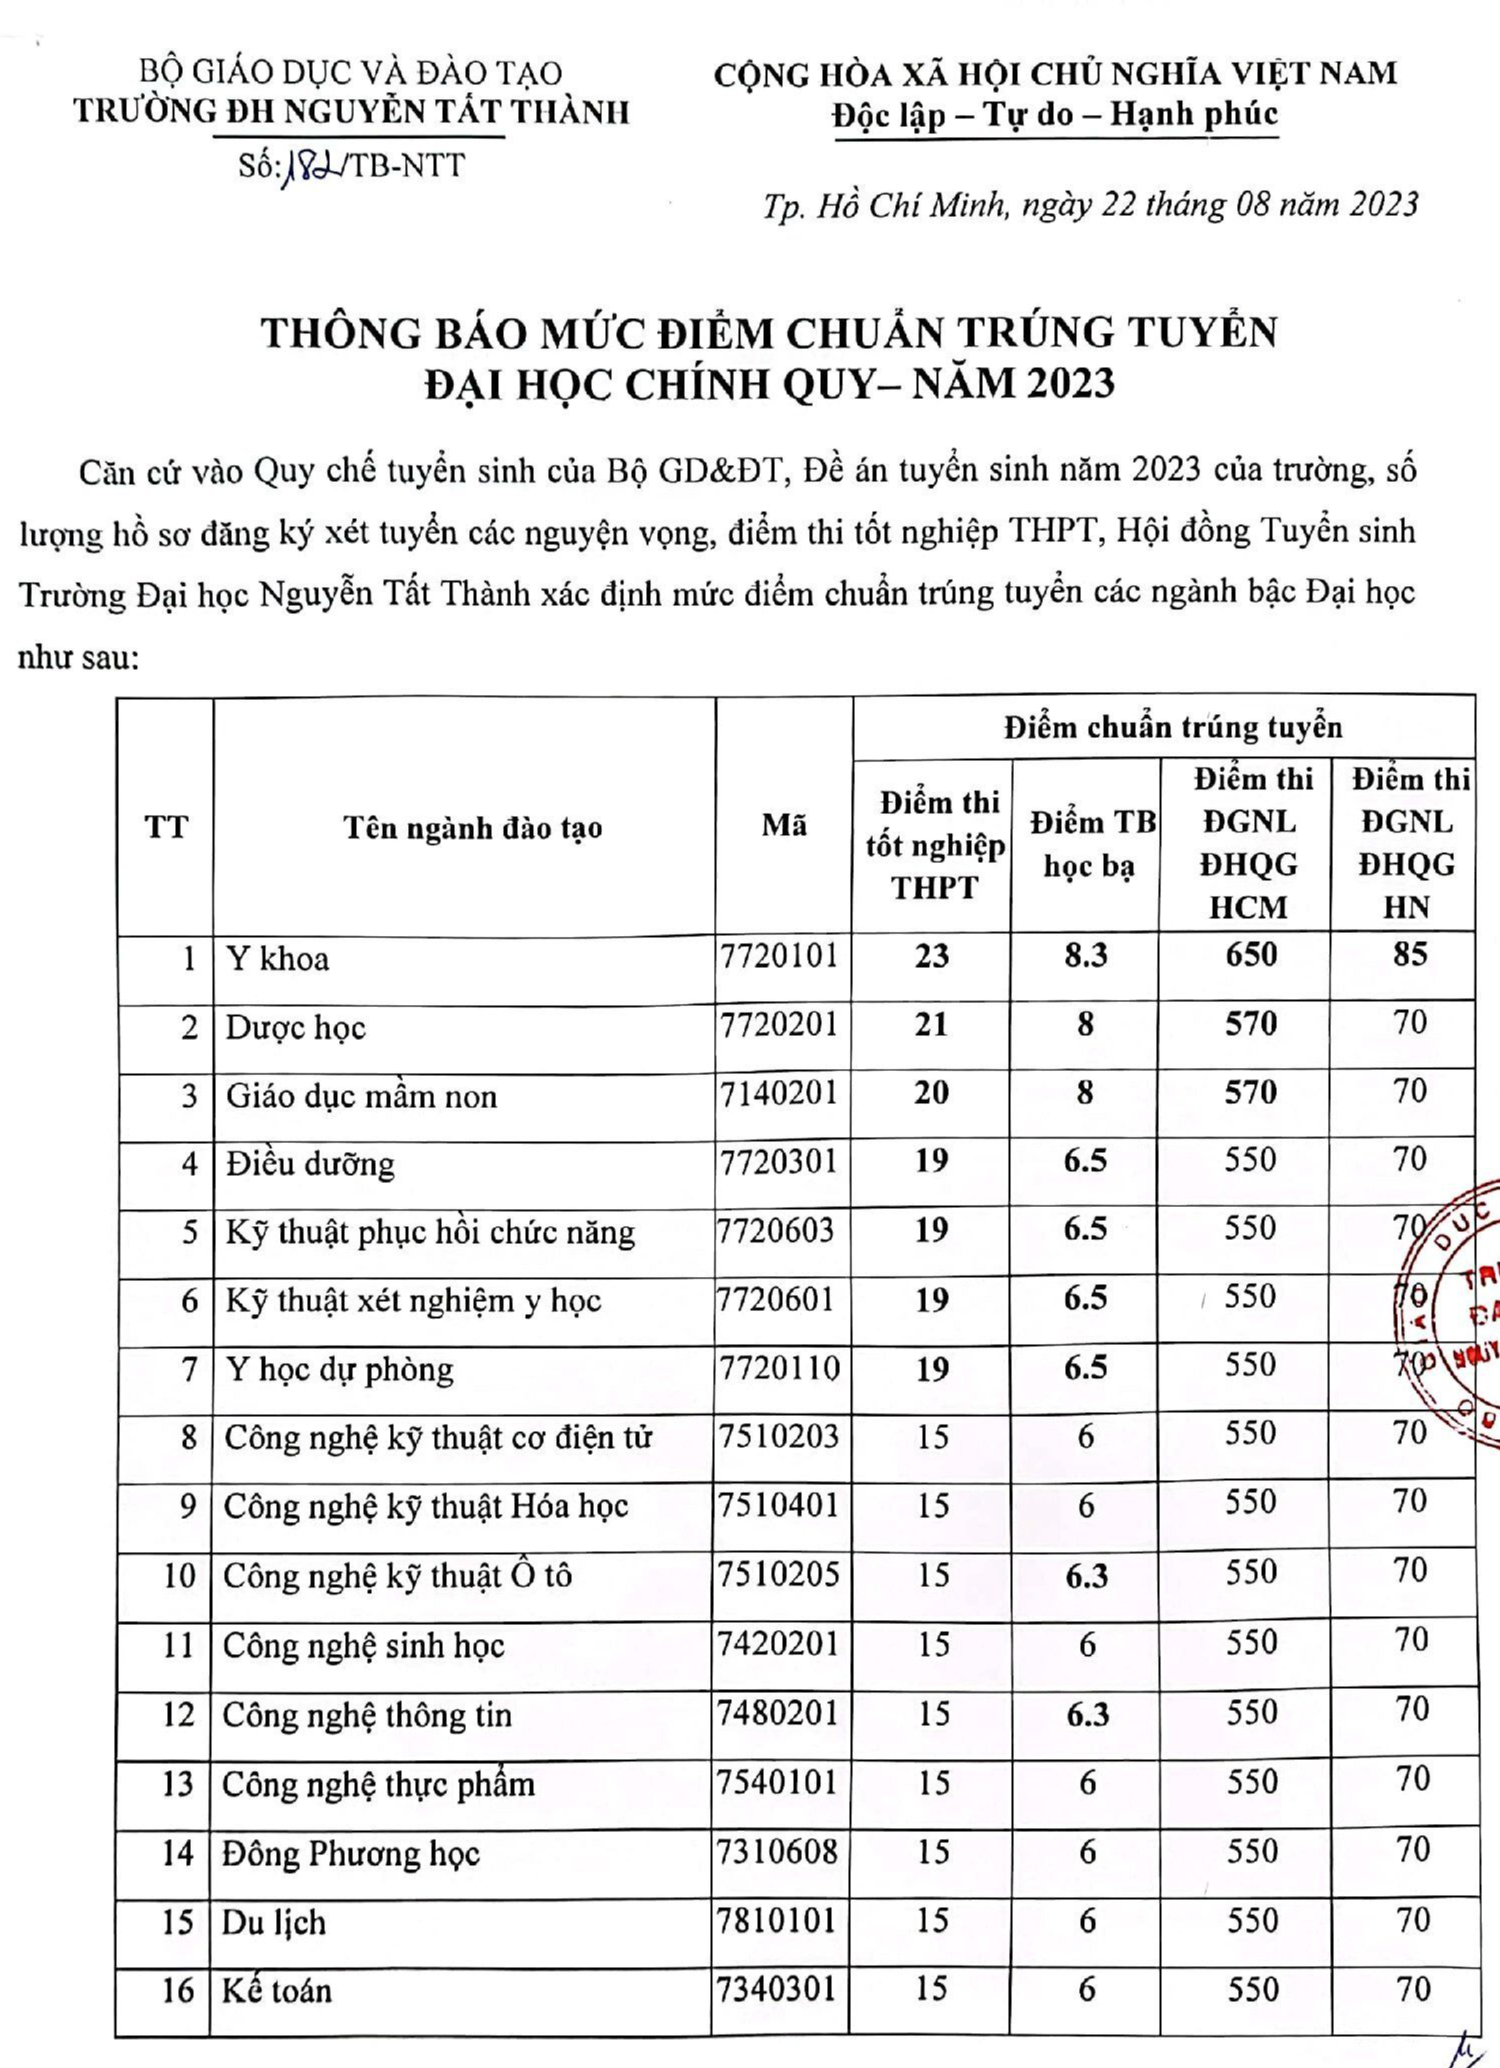 Trường ĐH Nguyễn Tất Thành công bố điểm chuẩn xét tuyển 52 ngành đào tạo năm 2023 - Ảnh 1.